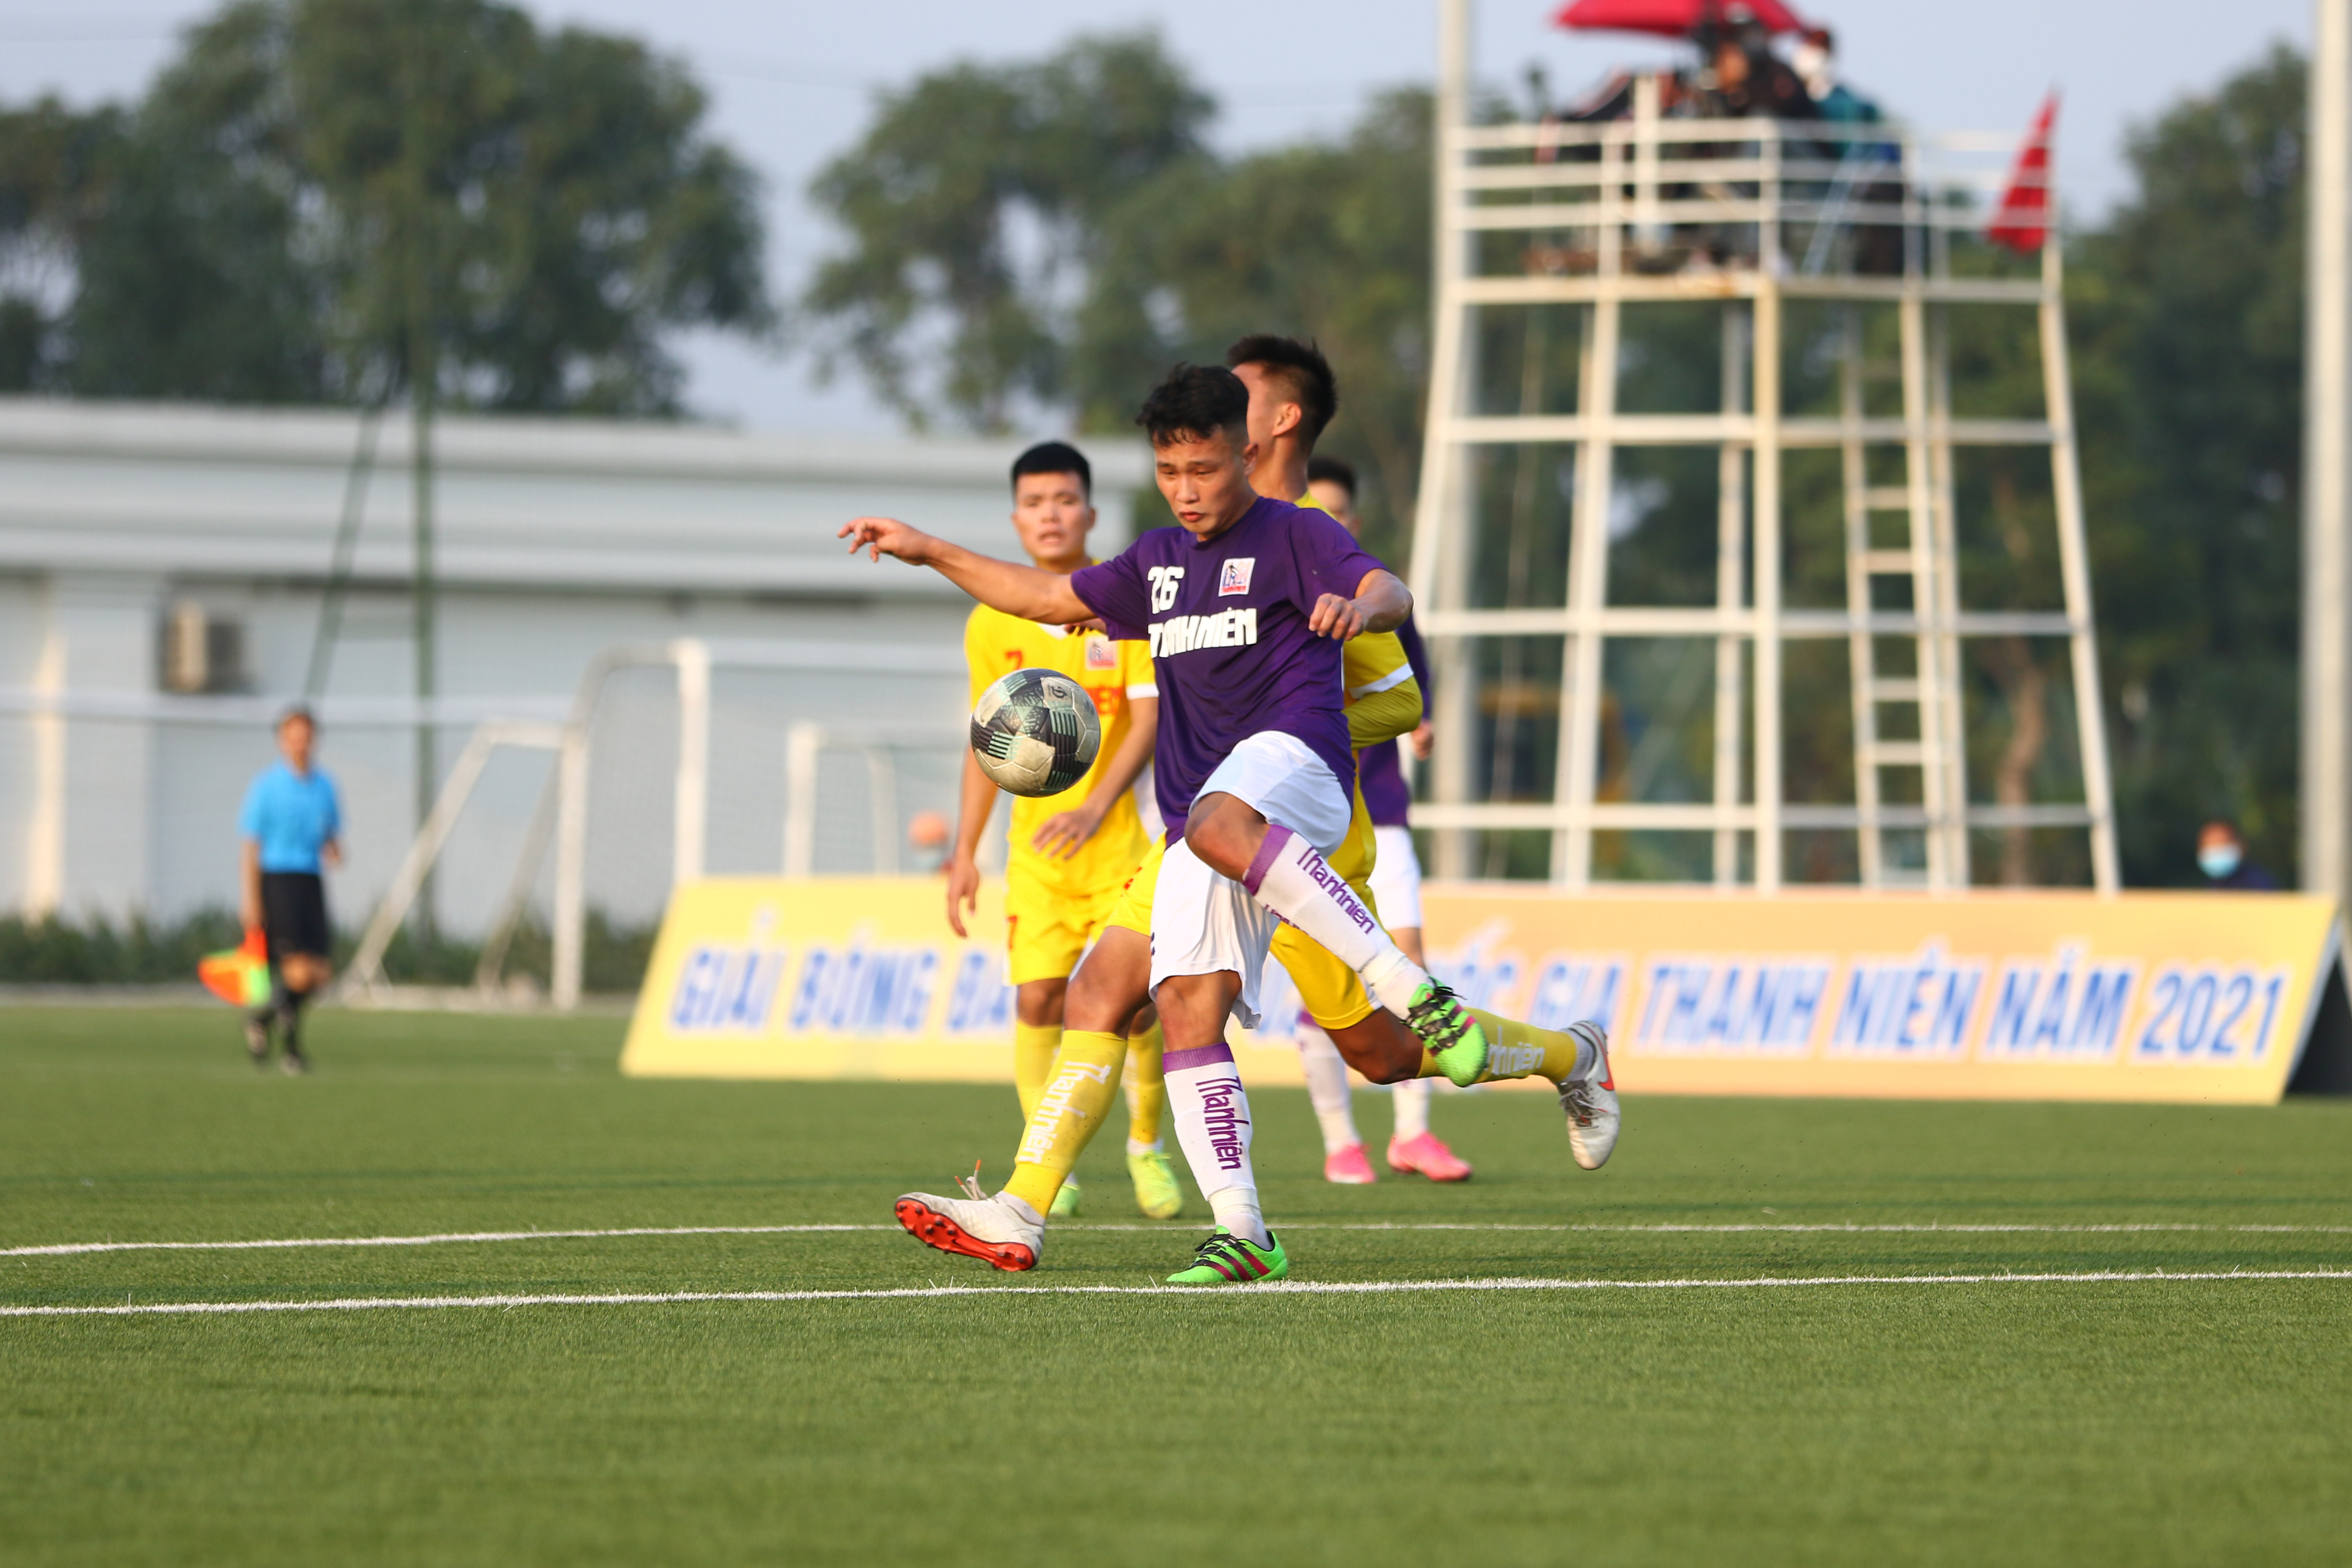 Các cầu thủ U21 Hà Nội đã thể hiện mình là đội bóng mạnh tại bảng B khi màn thể hiện khá tốt ở trận đấu này. Ảnh: PV